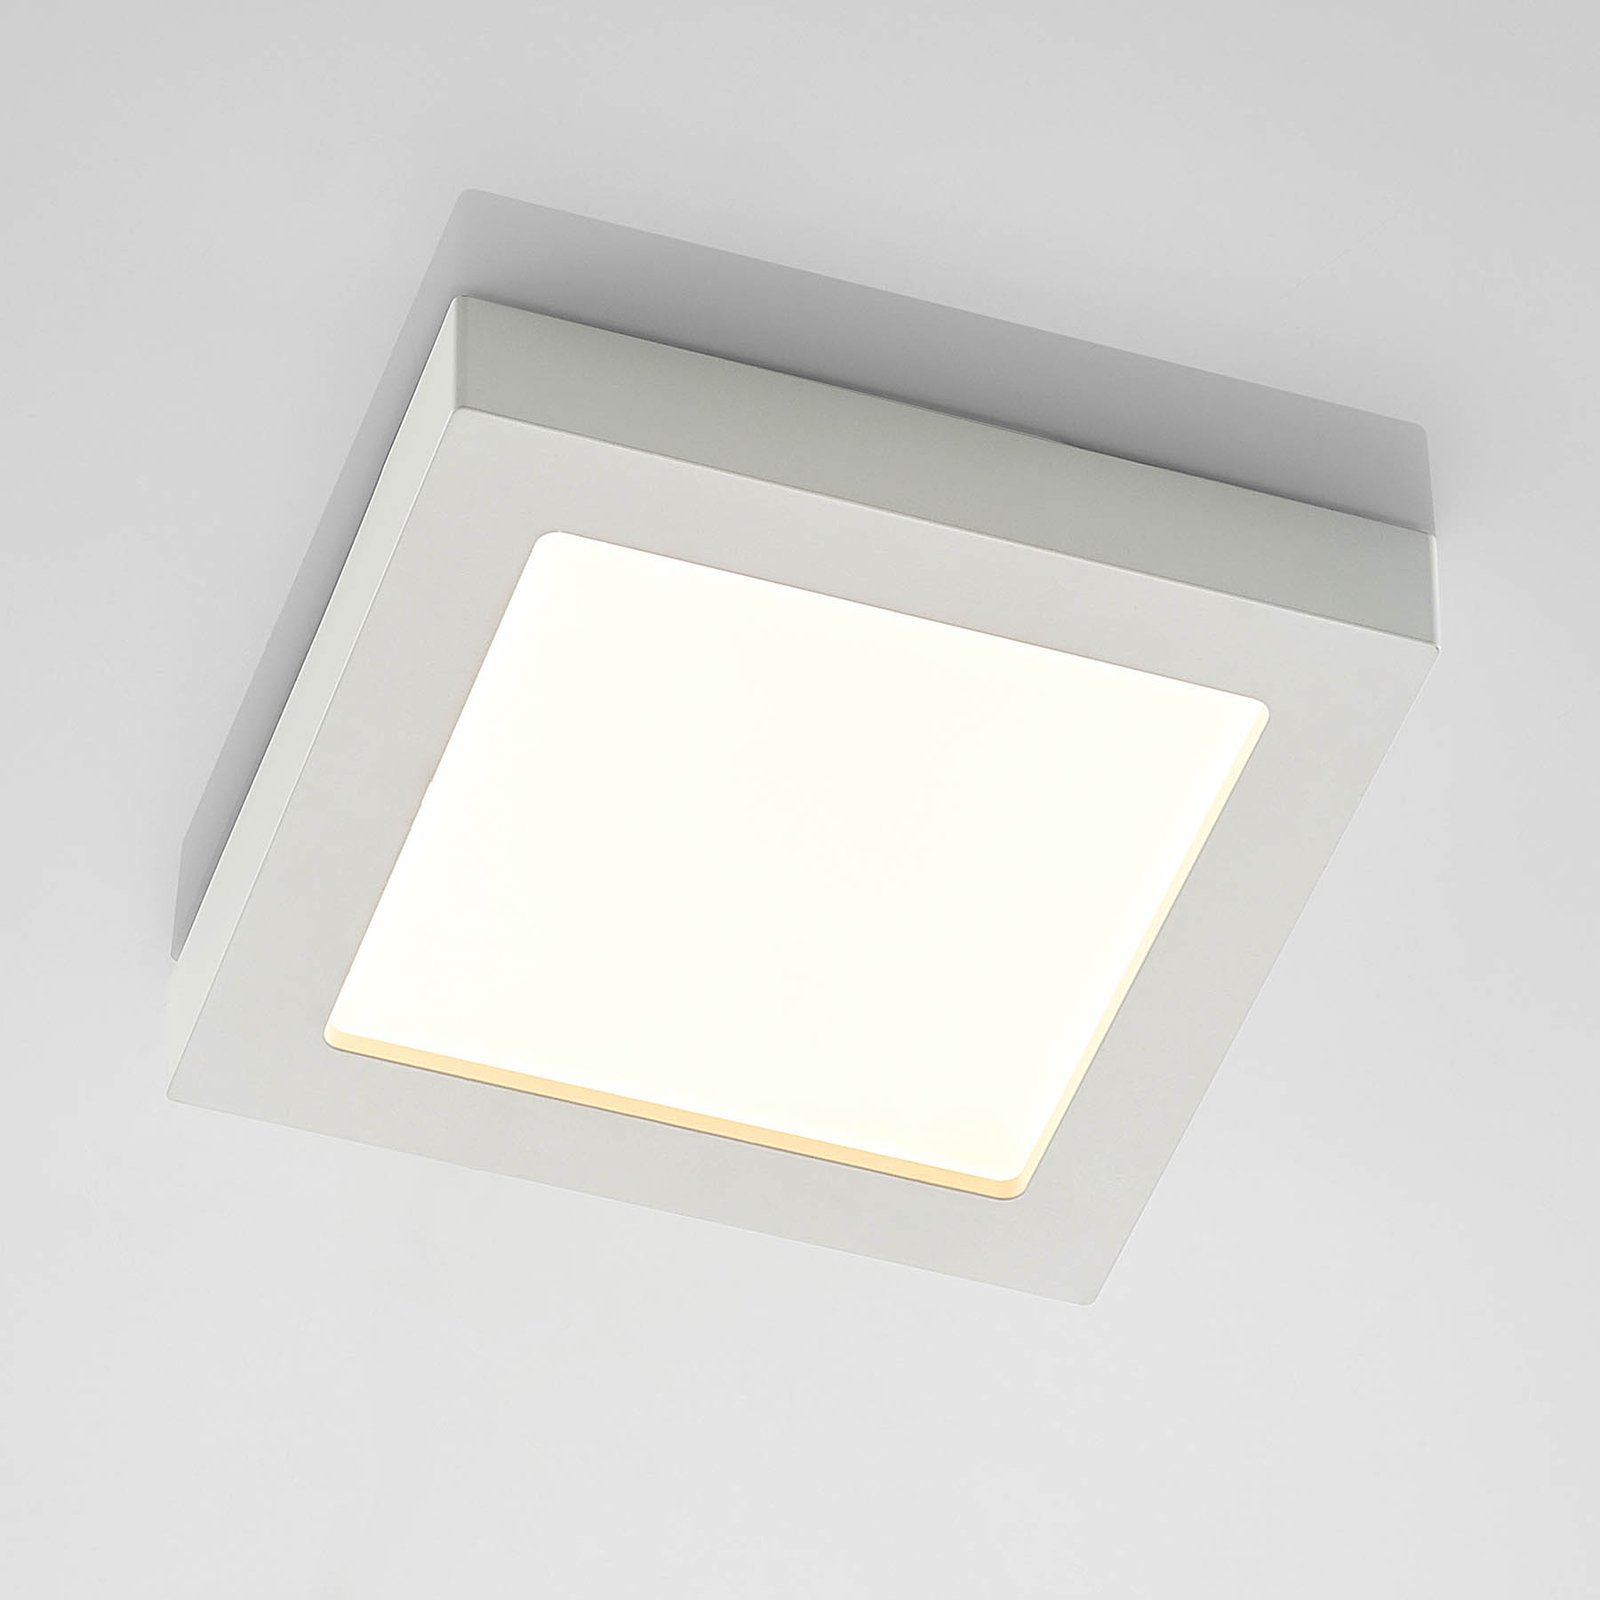 Stropní svítidlo Prios LED Alette, bílé, 22,7 cm, 18 W, stmívatelné